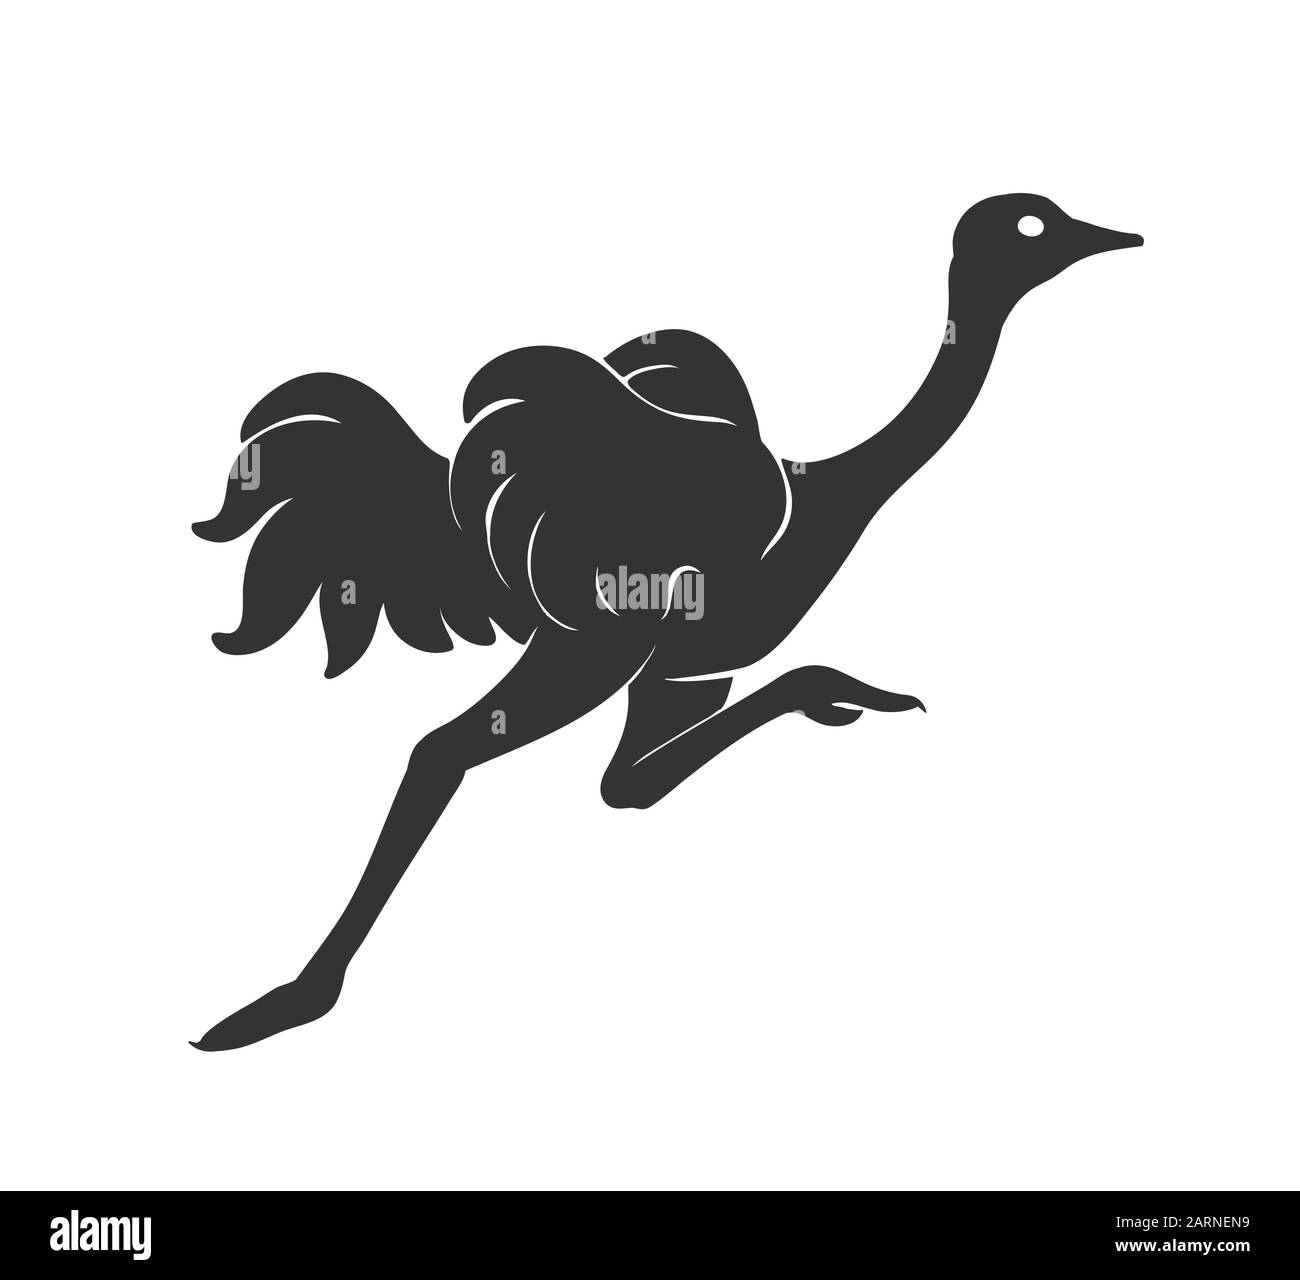 L'exécution d'Autruche vector illustration croquis de bird silhouette en noir isolated on white Illustration de Vecteur